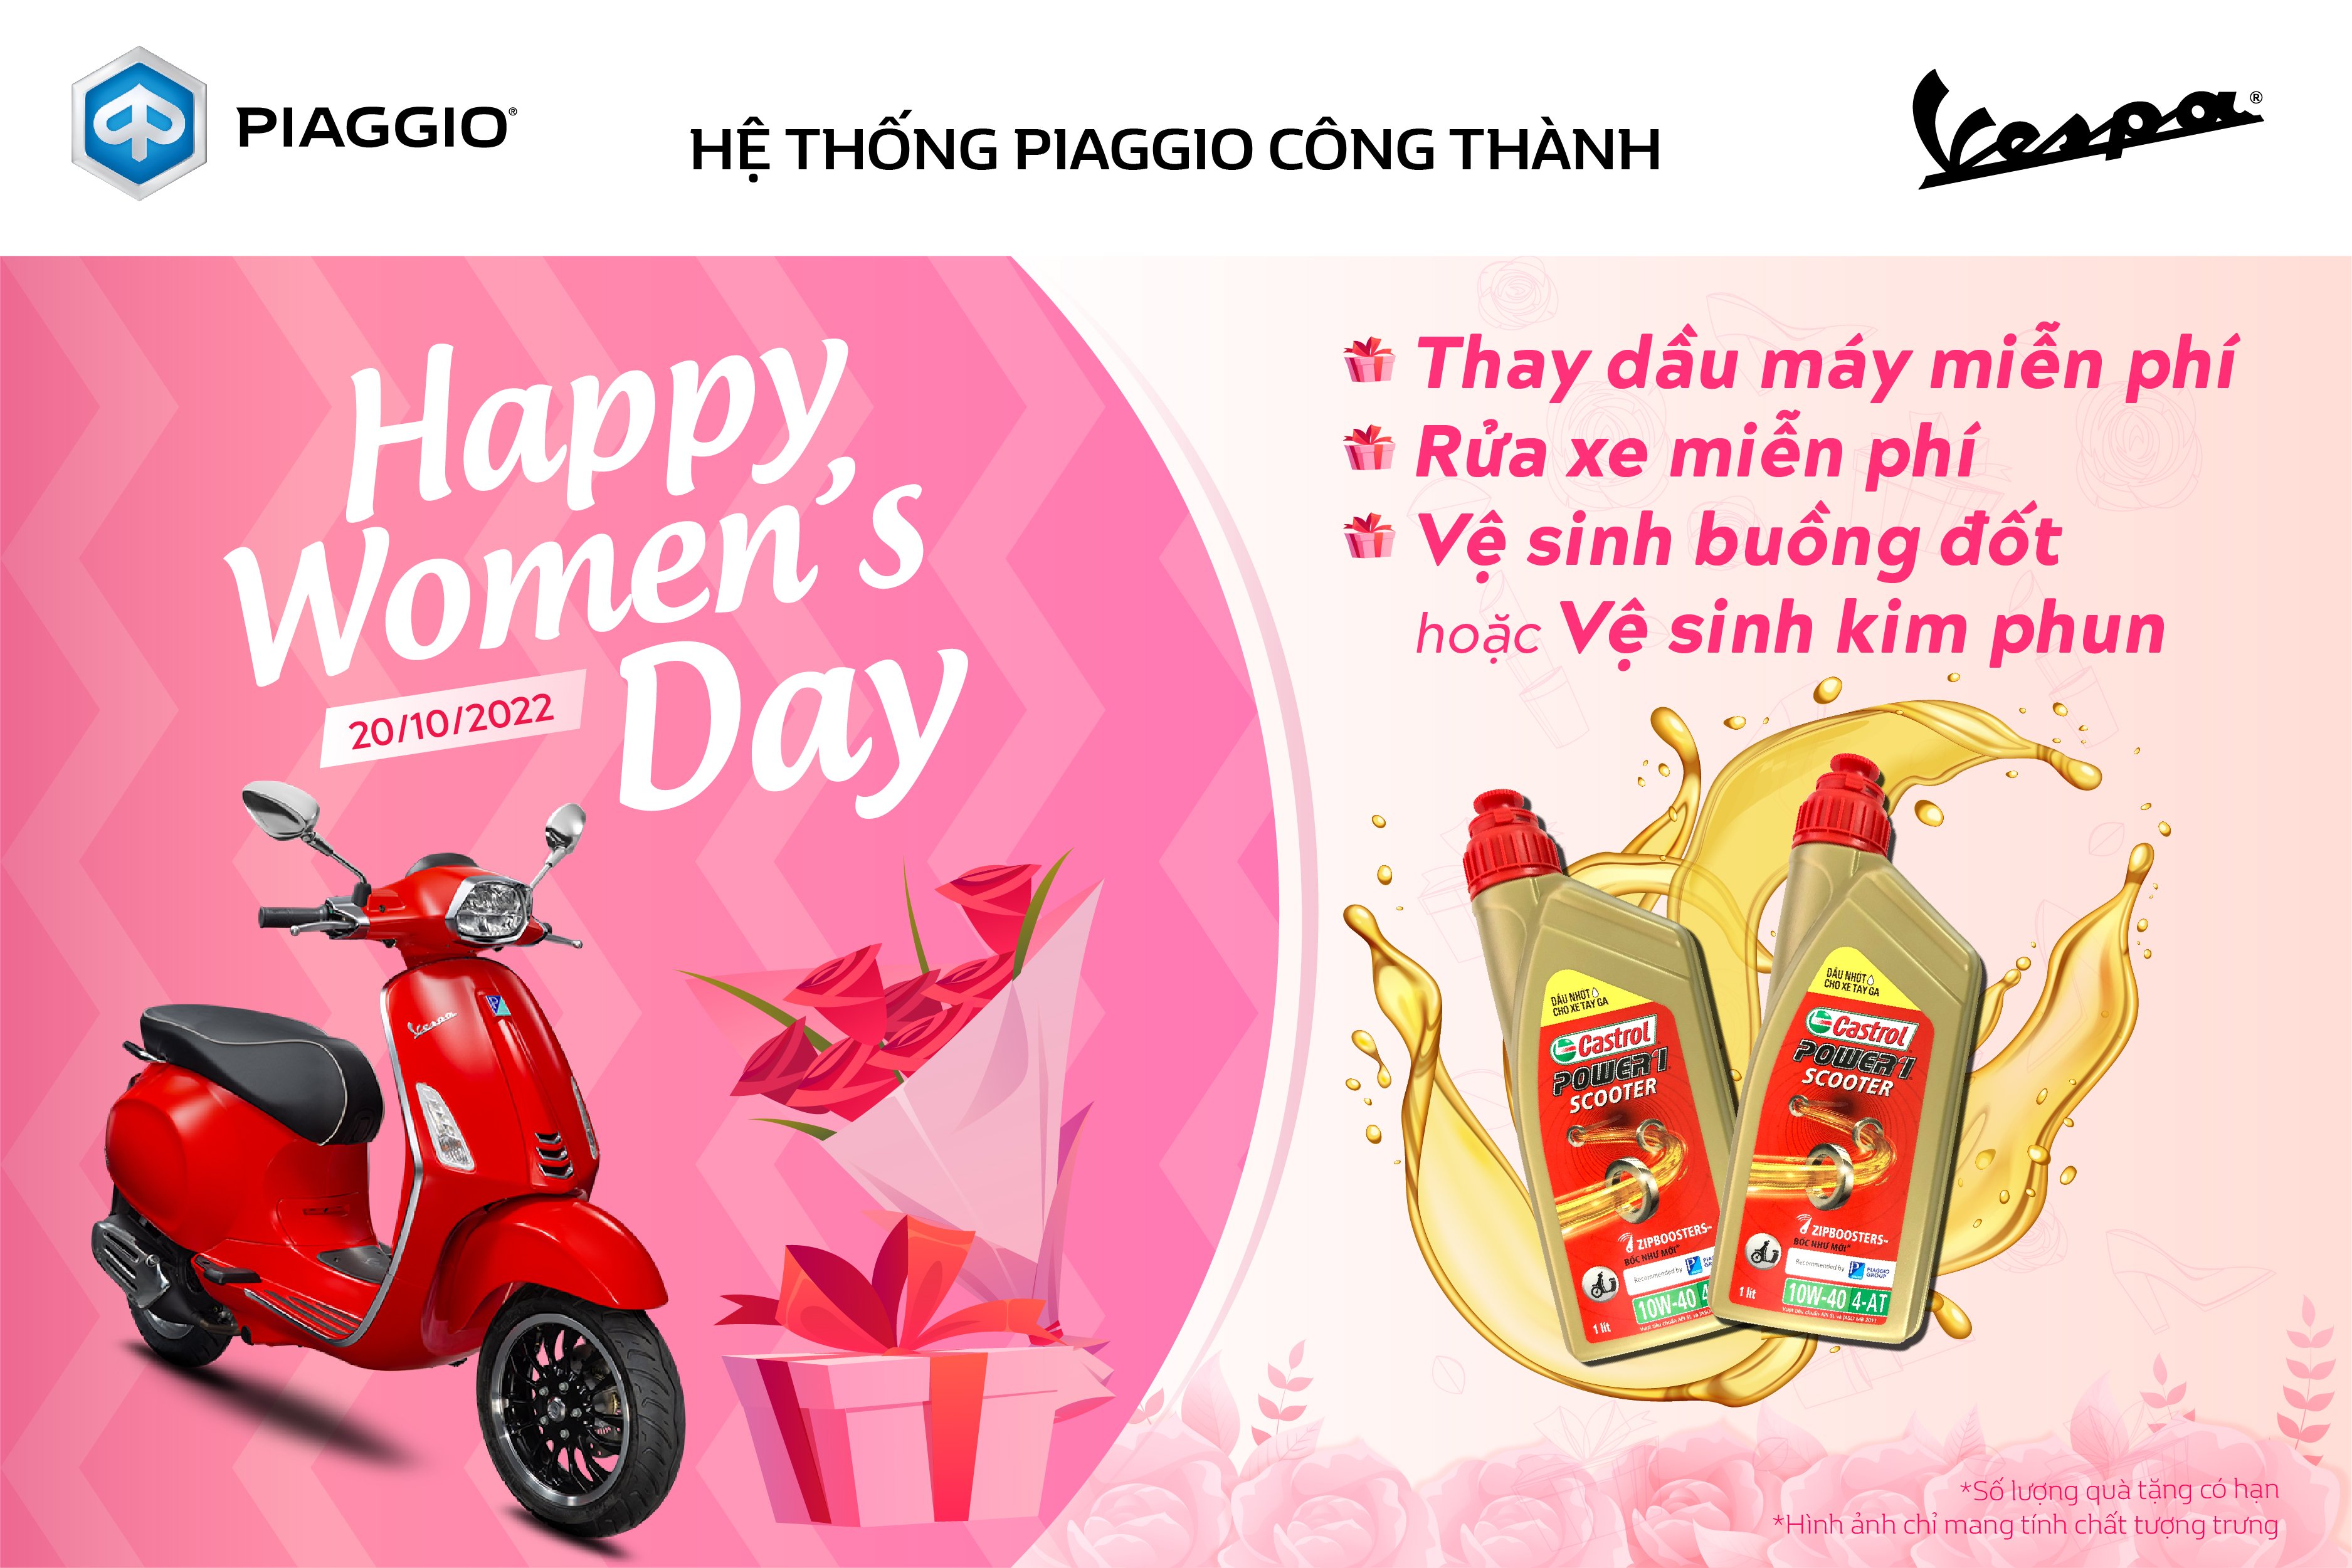 Piaggio tri ân 20/10: Năm nay, nhãn hàng xe Piaggio tri ân phụ nữ Việt Nam bằng chương trình khuyến mãi rực rỡ. Hãy xem hình ảnh và tận hưởng sự ấn tượng của nhãn hàng cùng mức giá ưu đãi hấp dẫn từ Piaggio dành cho ngày 20/10.